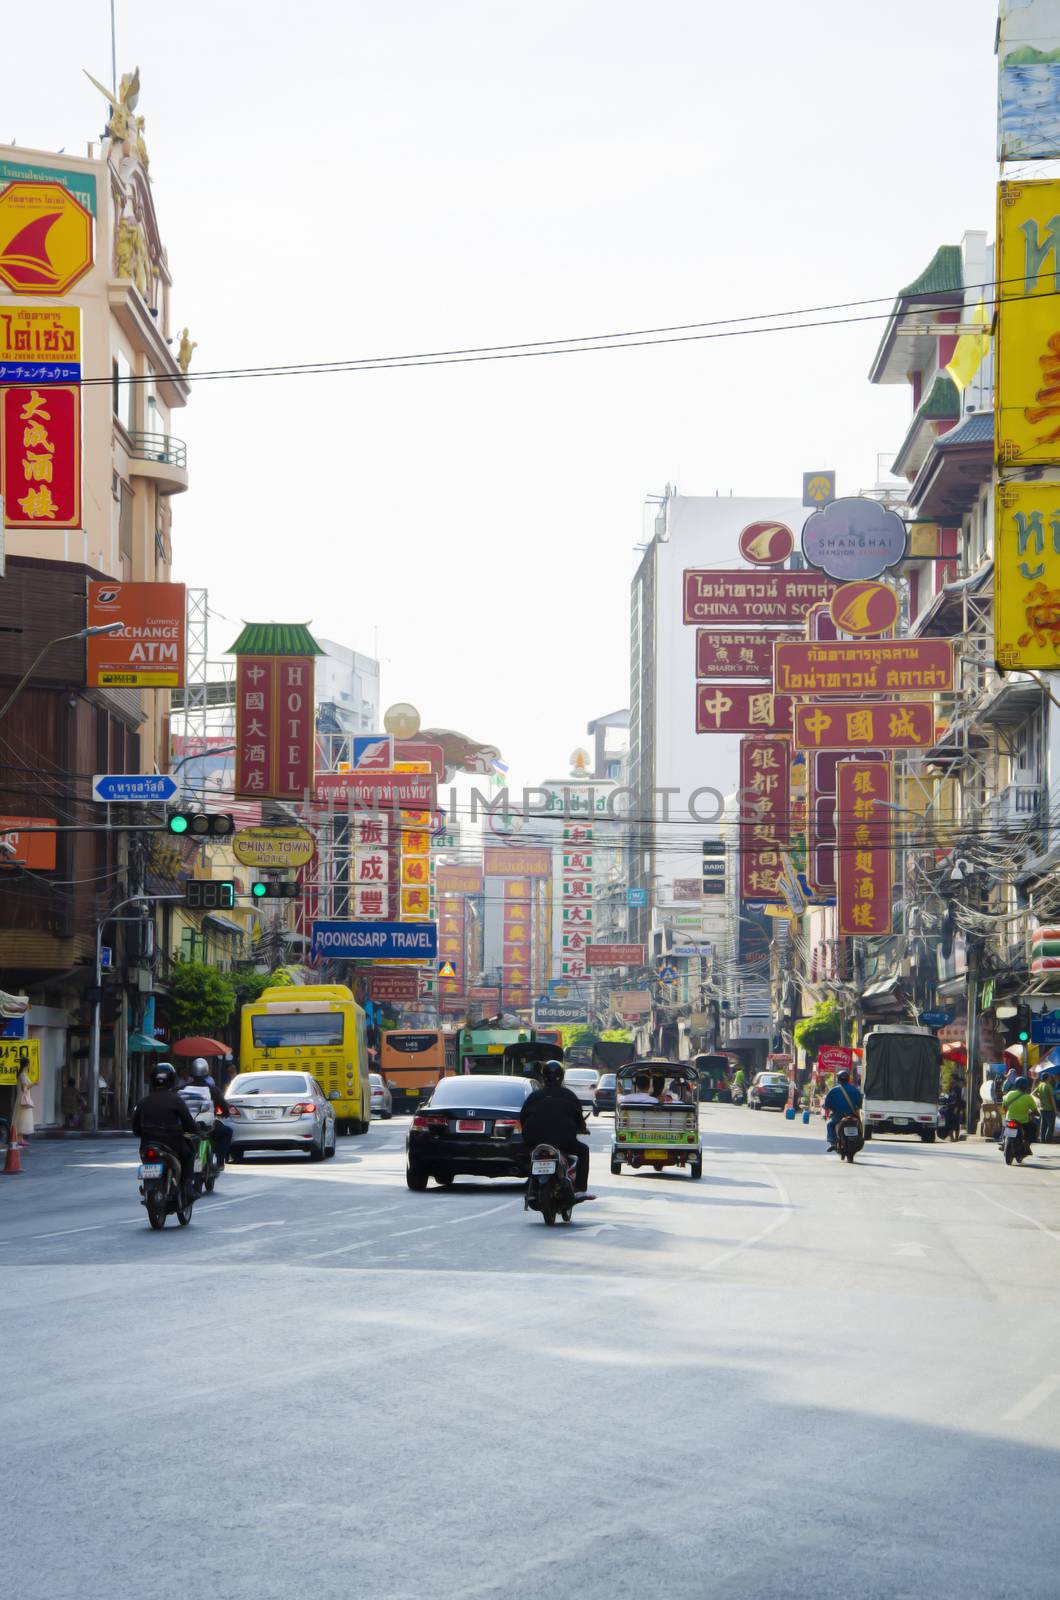 China town bangkok by siiixth